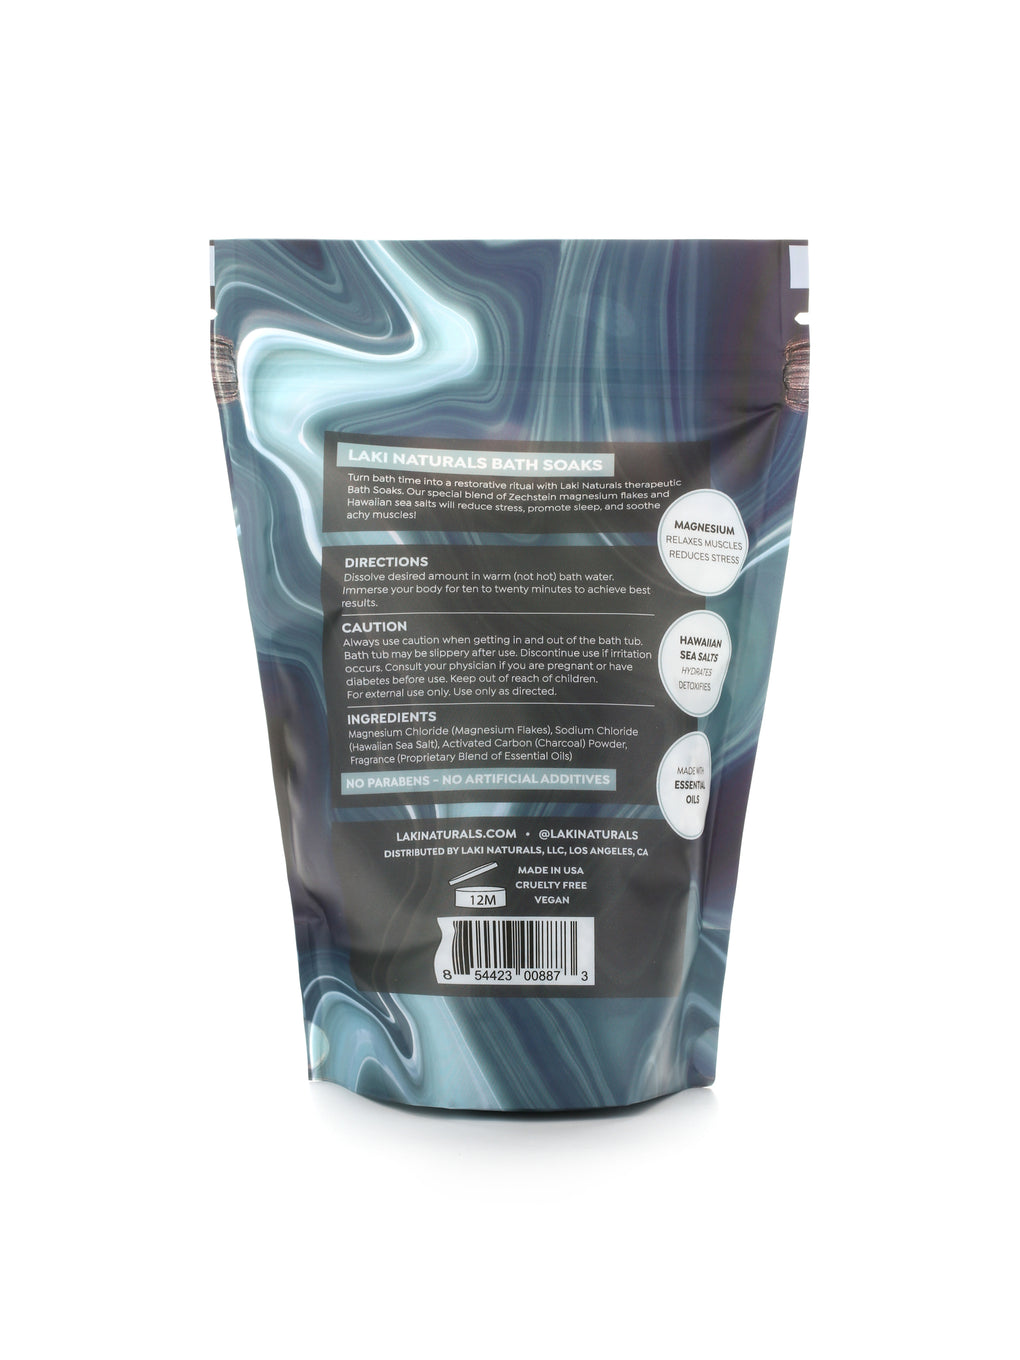 Charcoal Lava Magnesium Flakes Bath Soak  - Laki Naturals